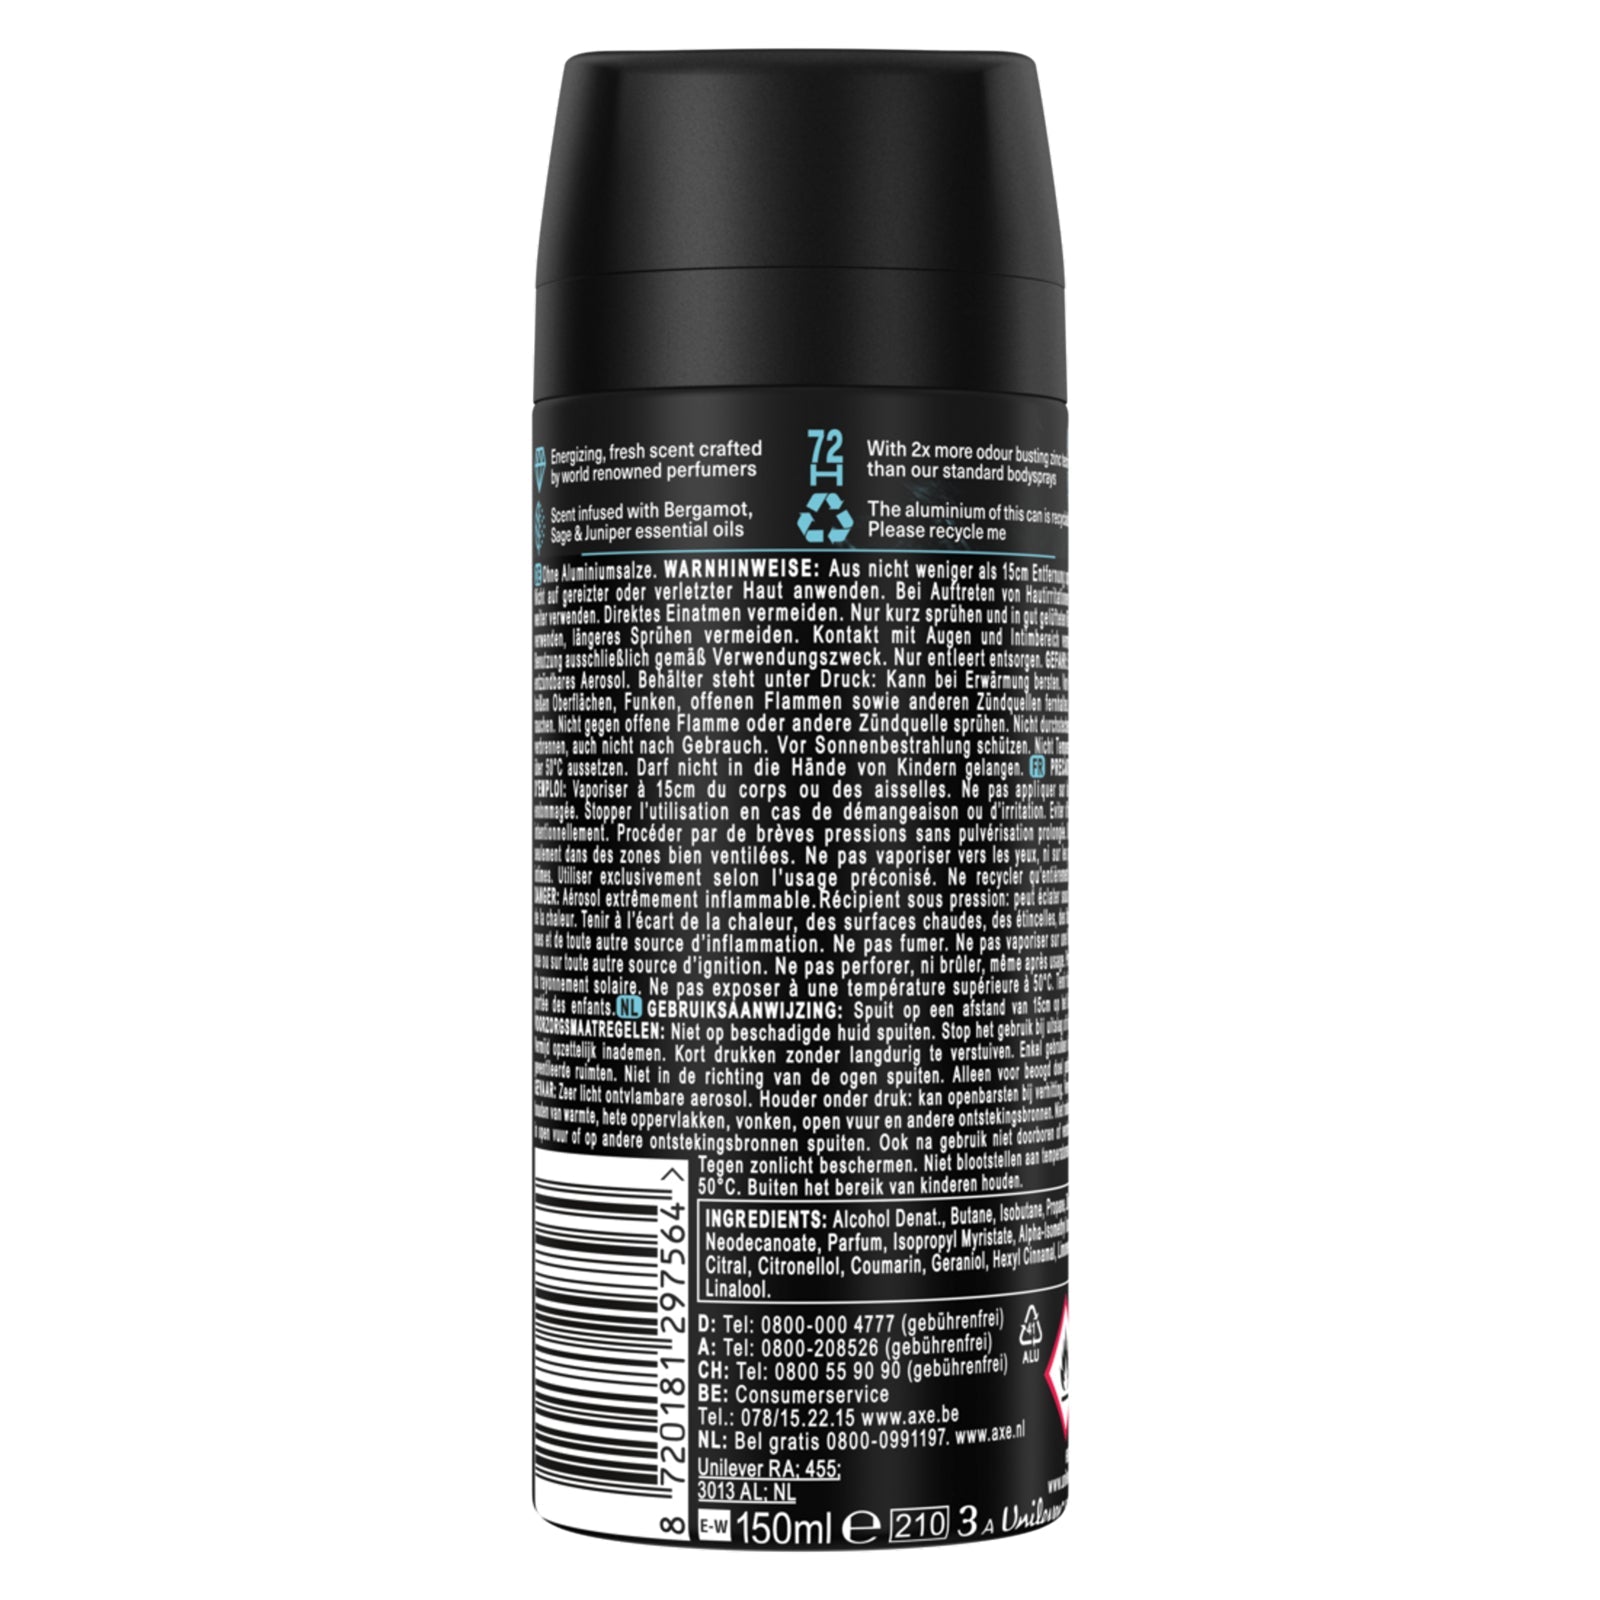 Axe Premium Bodyspray Aqua Bergamot Deo ohne Aluminiumsalze mit 72 Stunden Schutz 150 ml